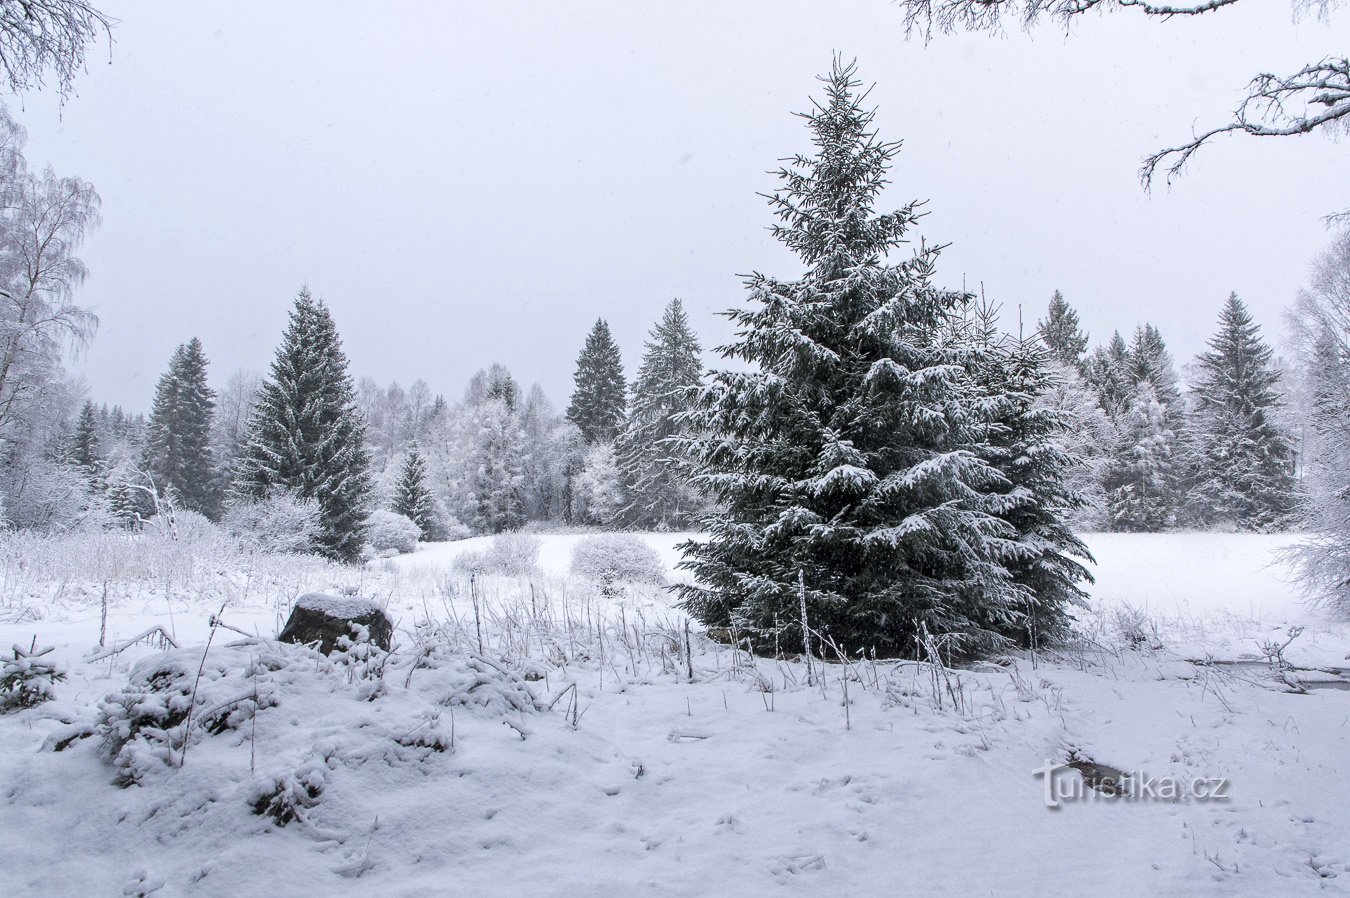 Χειμερινή εβδομάδα στη Šumava – Φεβρουάριος 2020 pt. 2